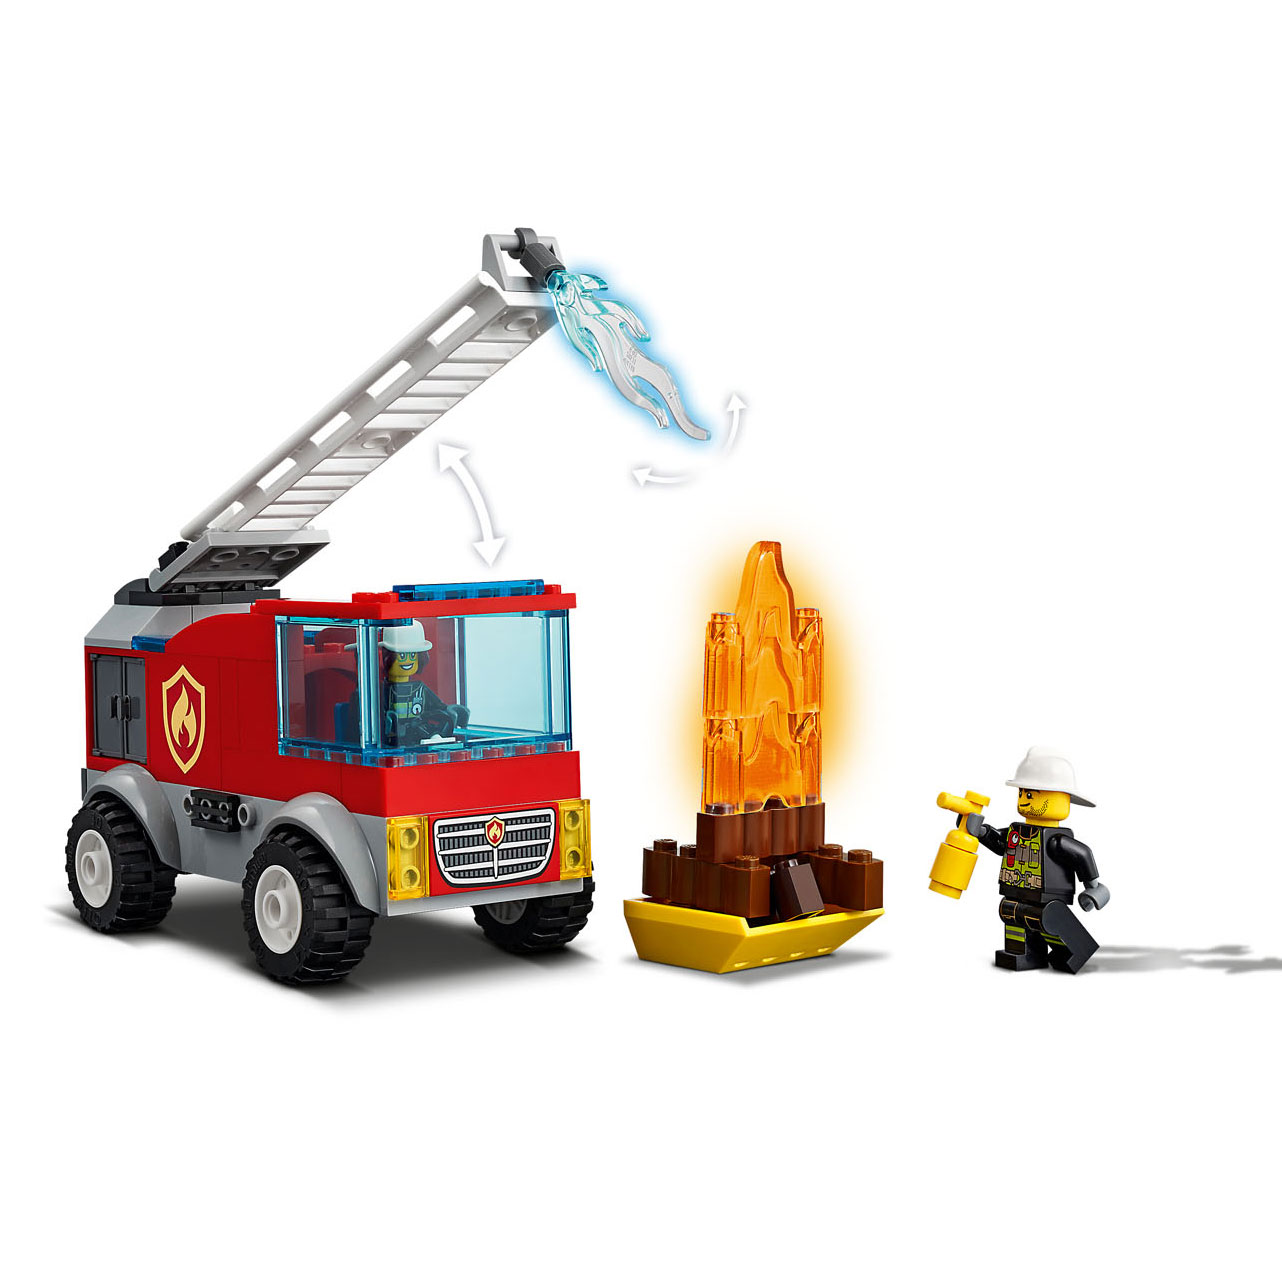 LEGO City 60280 Ladderwagen